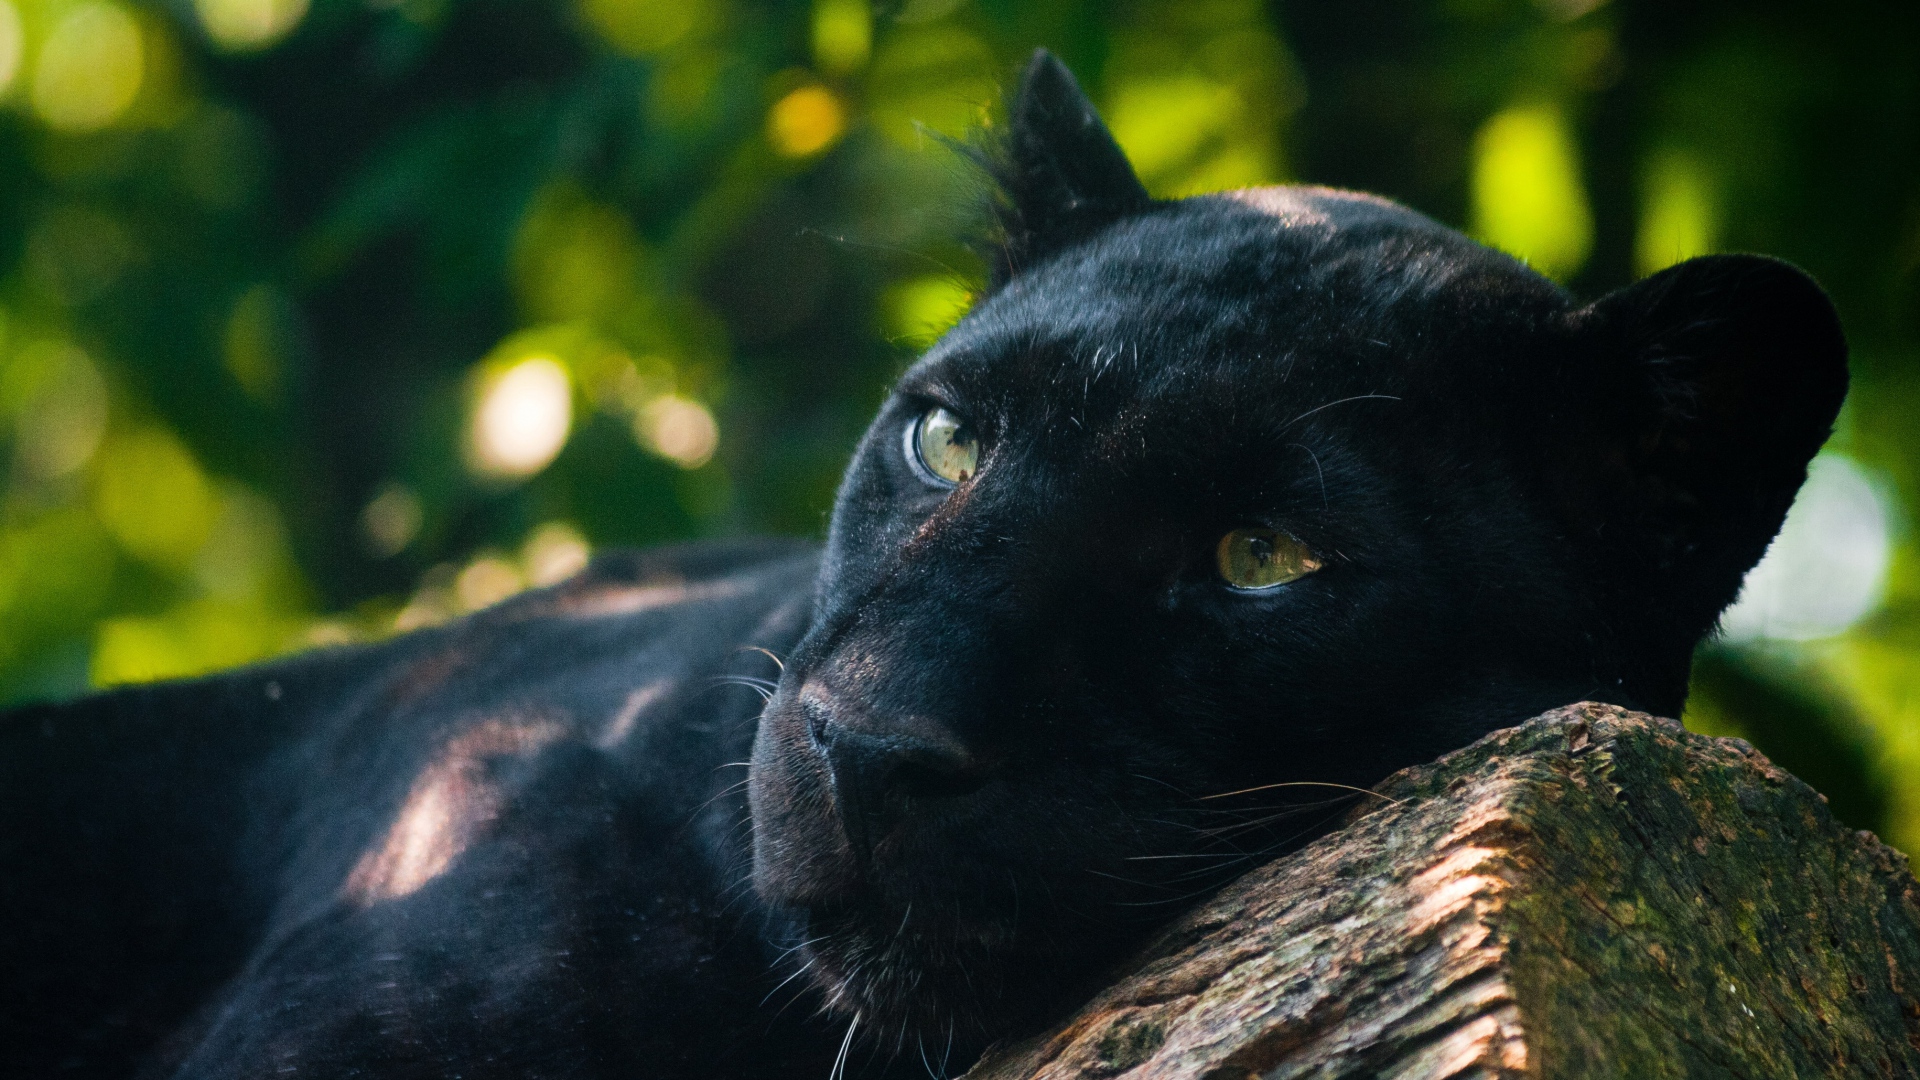 Wallpaper Panther Timber Lying Predator Full HD 1080p